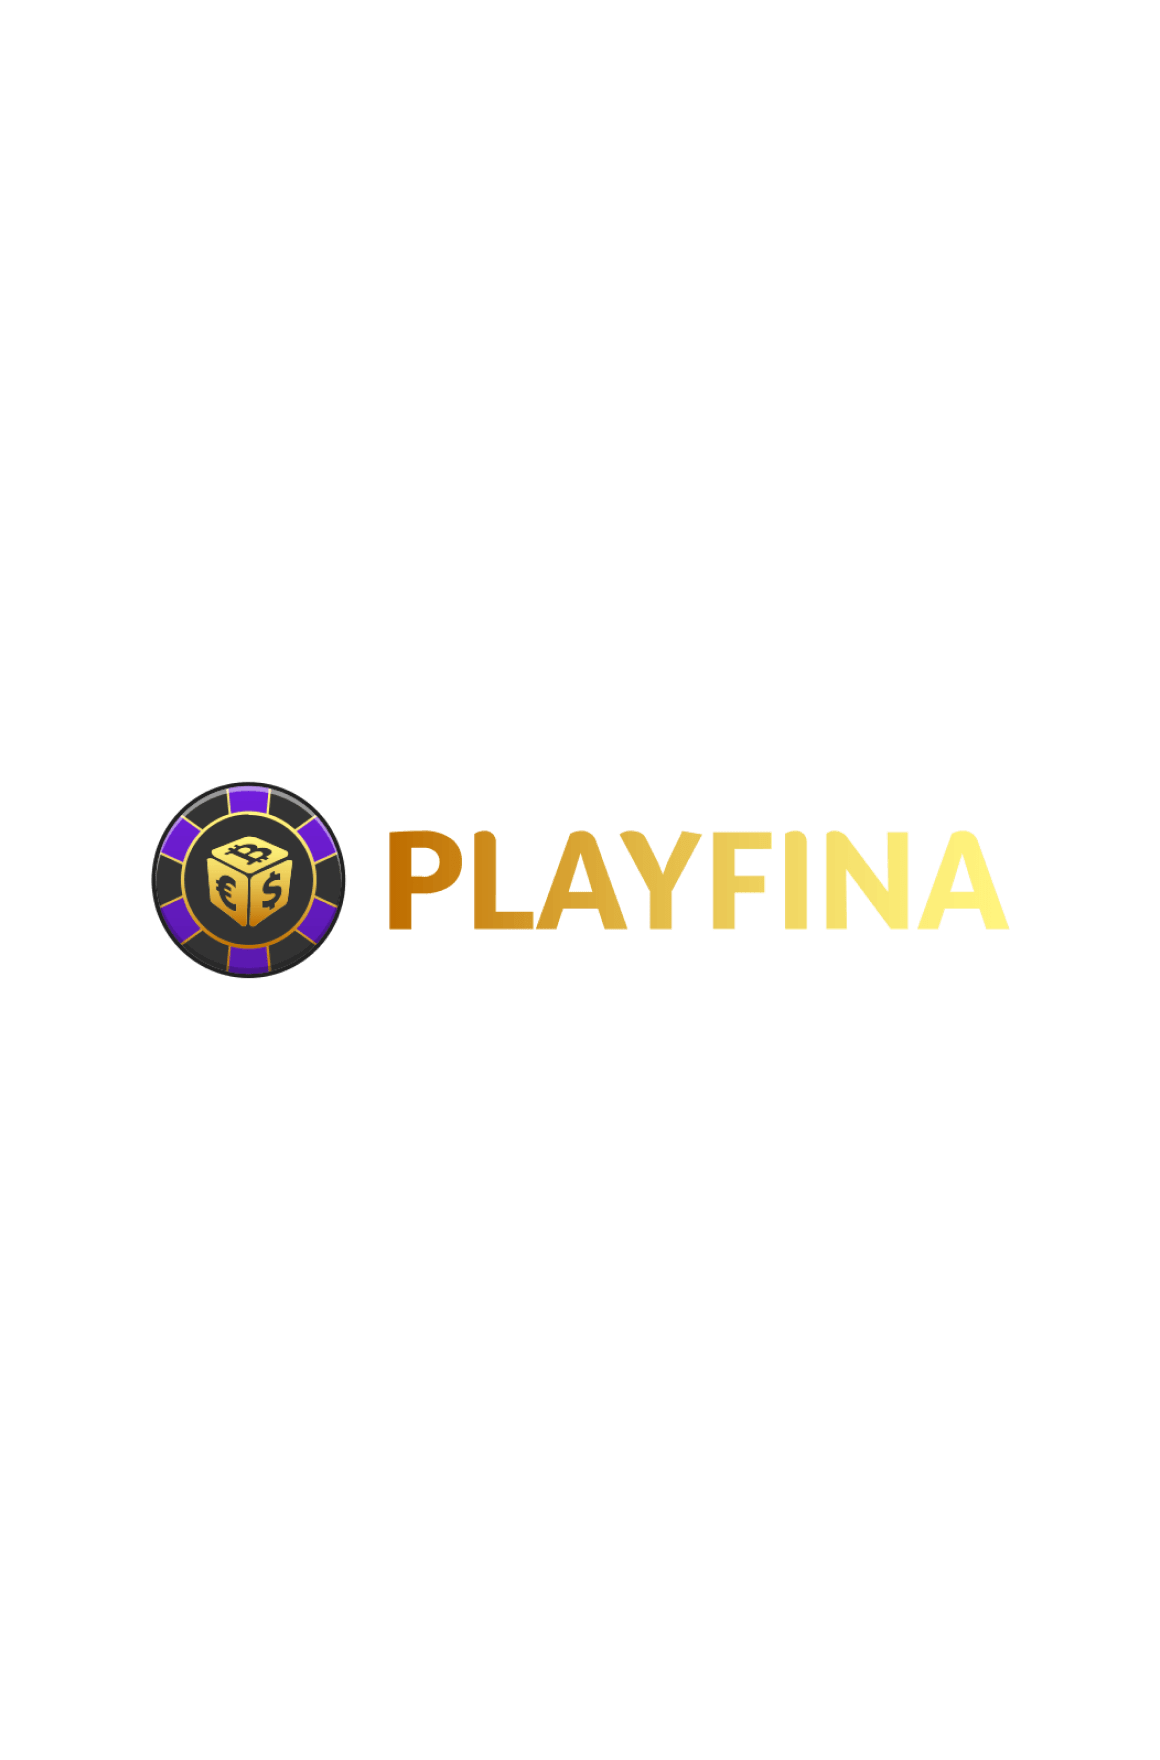 Playfina